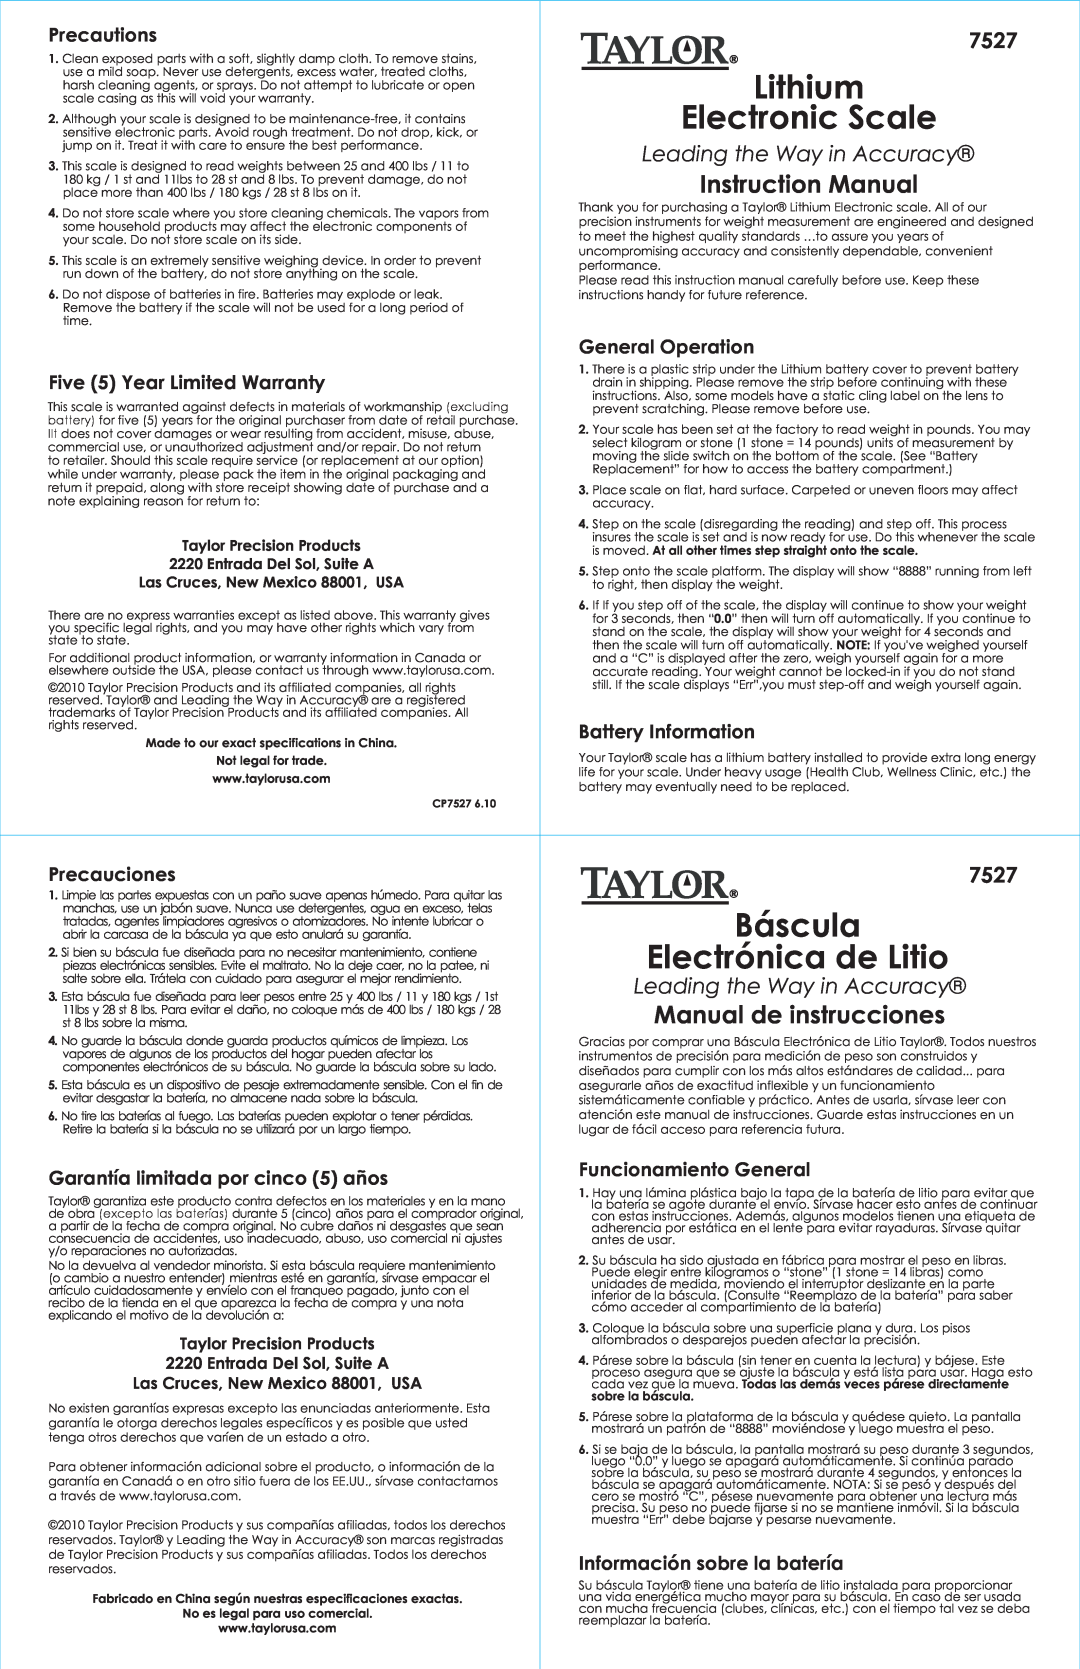 Taylor 7527 instruction manual Lithium, Electronic Scale, Báscula, Electrónica de Litio, Instruction Manual 